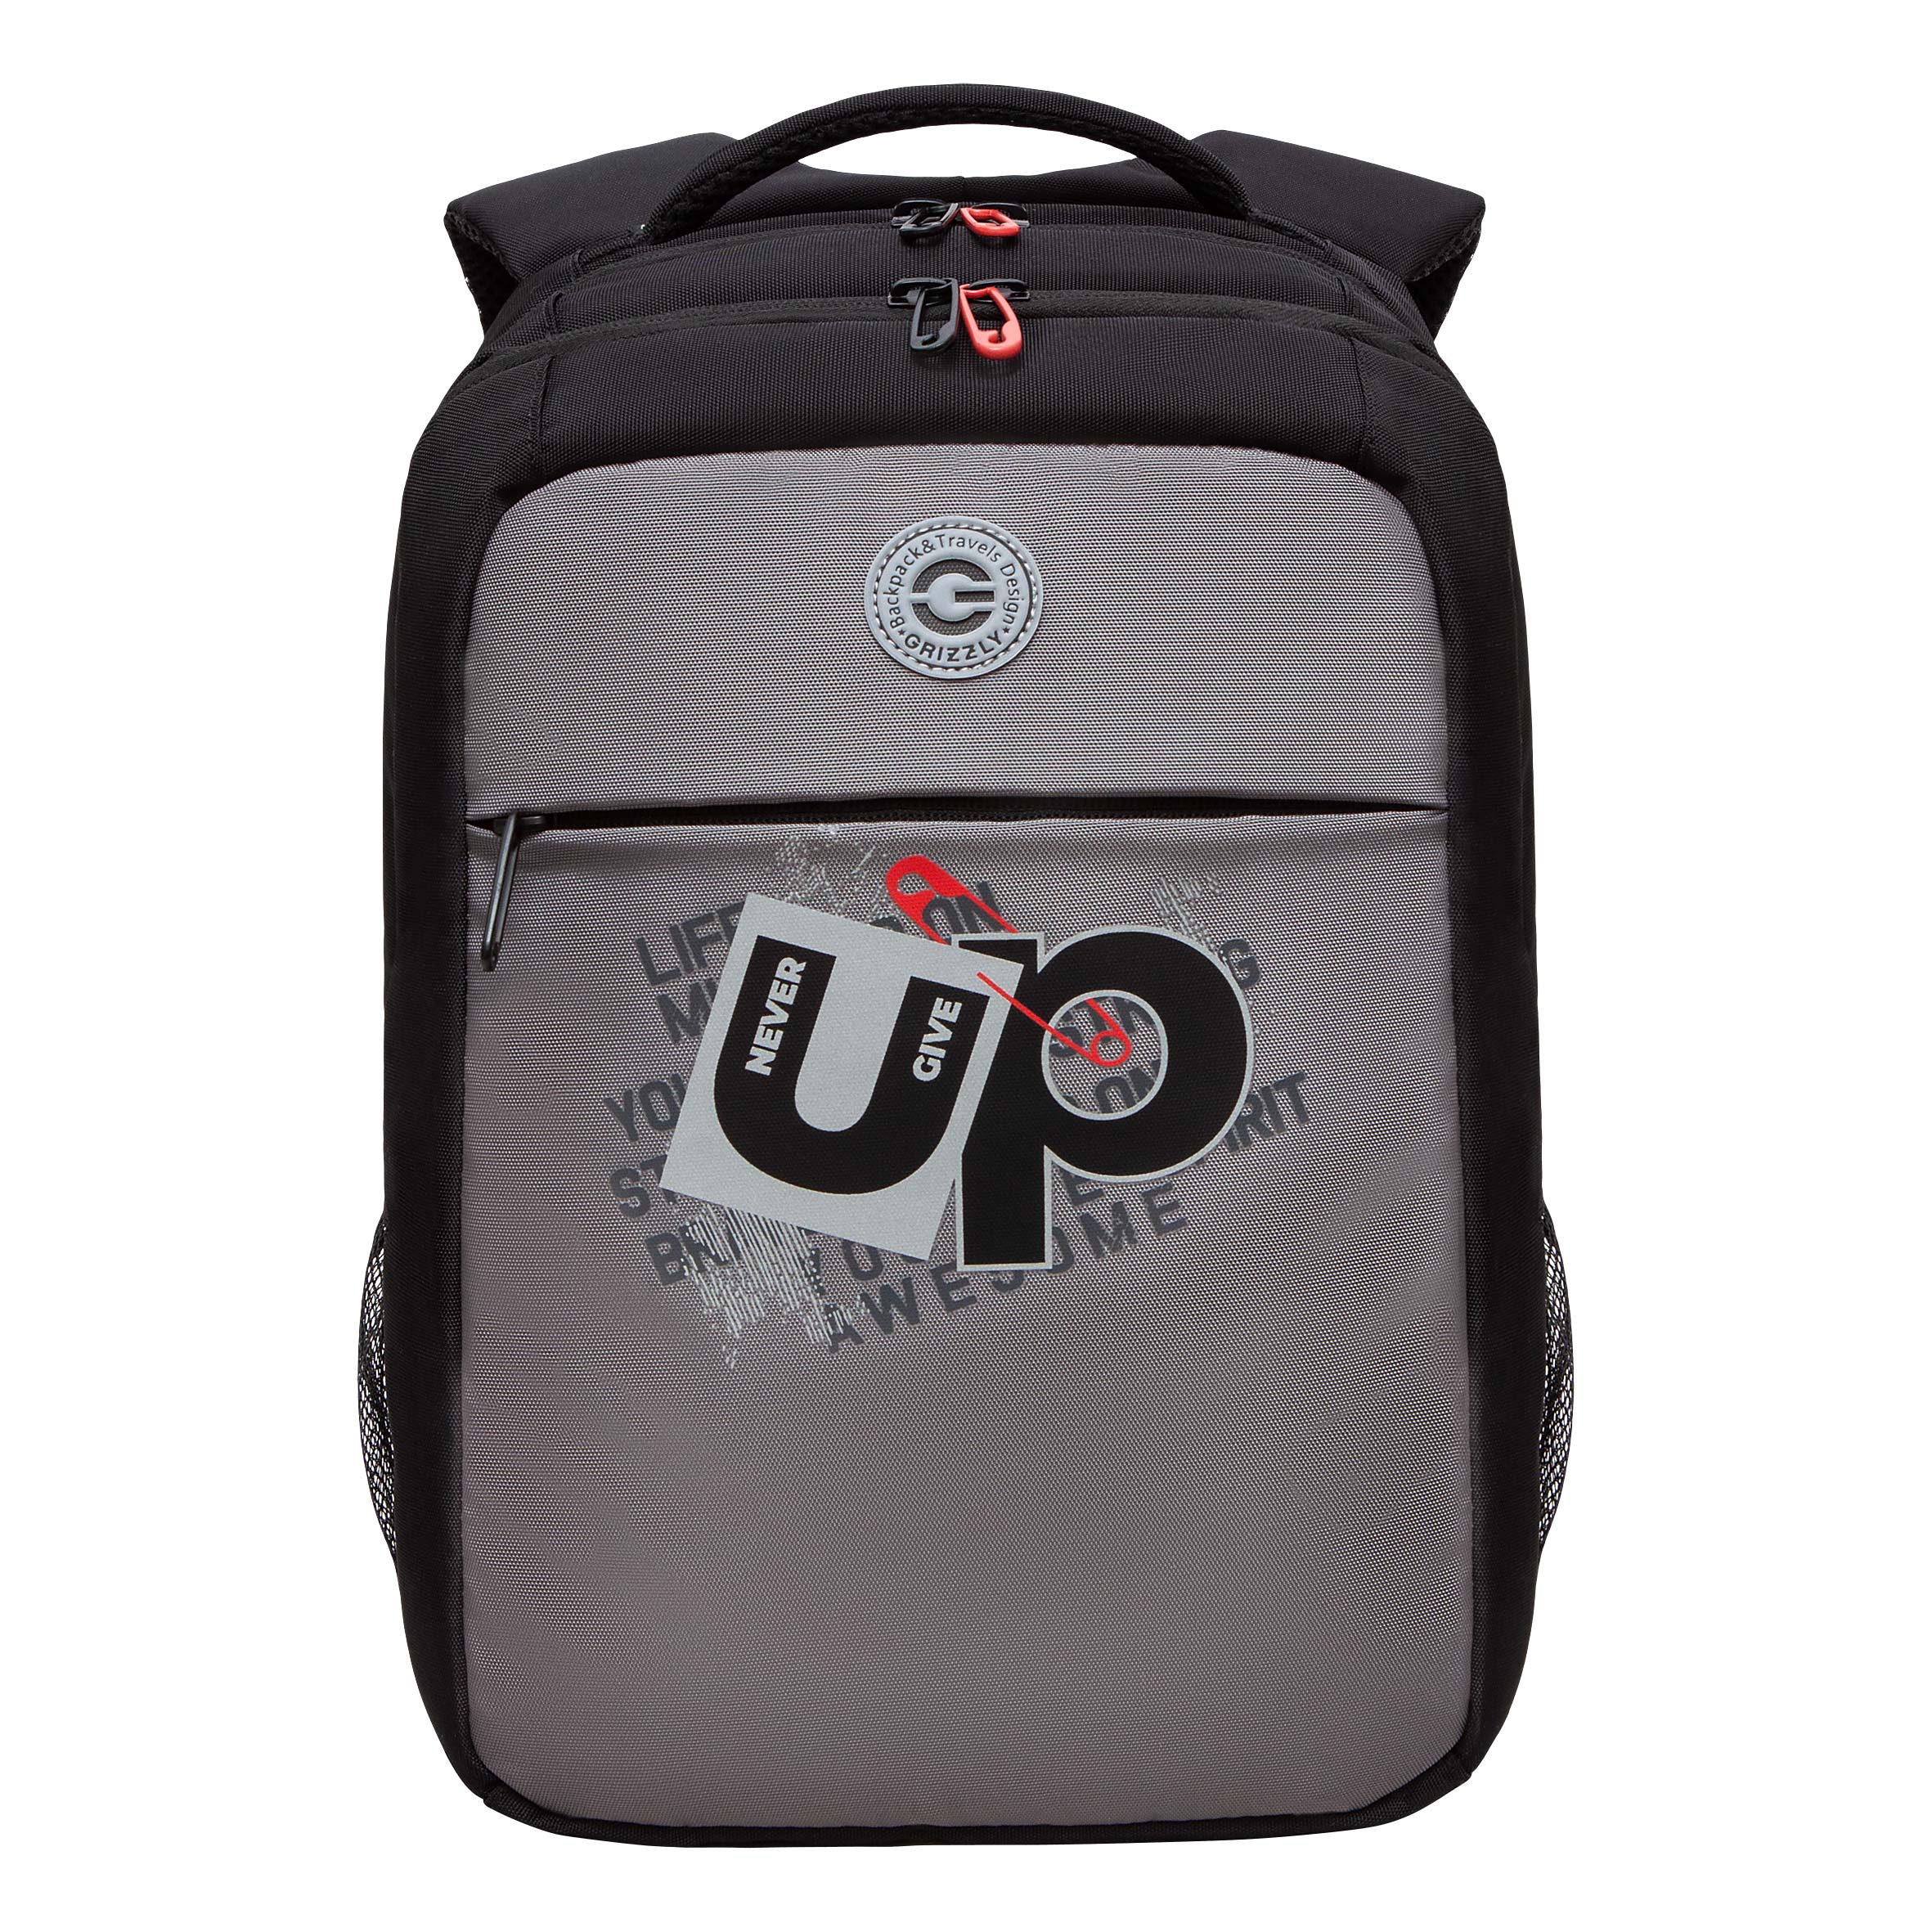 Рюкзак молодежный GRIZZLY с карманом для ноутбука 13, для мальчика, RB-456-3 2 рюкзак для ноутбука razer concourse pro 17 3 rc81 02920101 0500